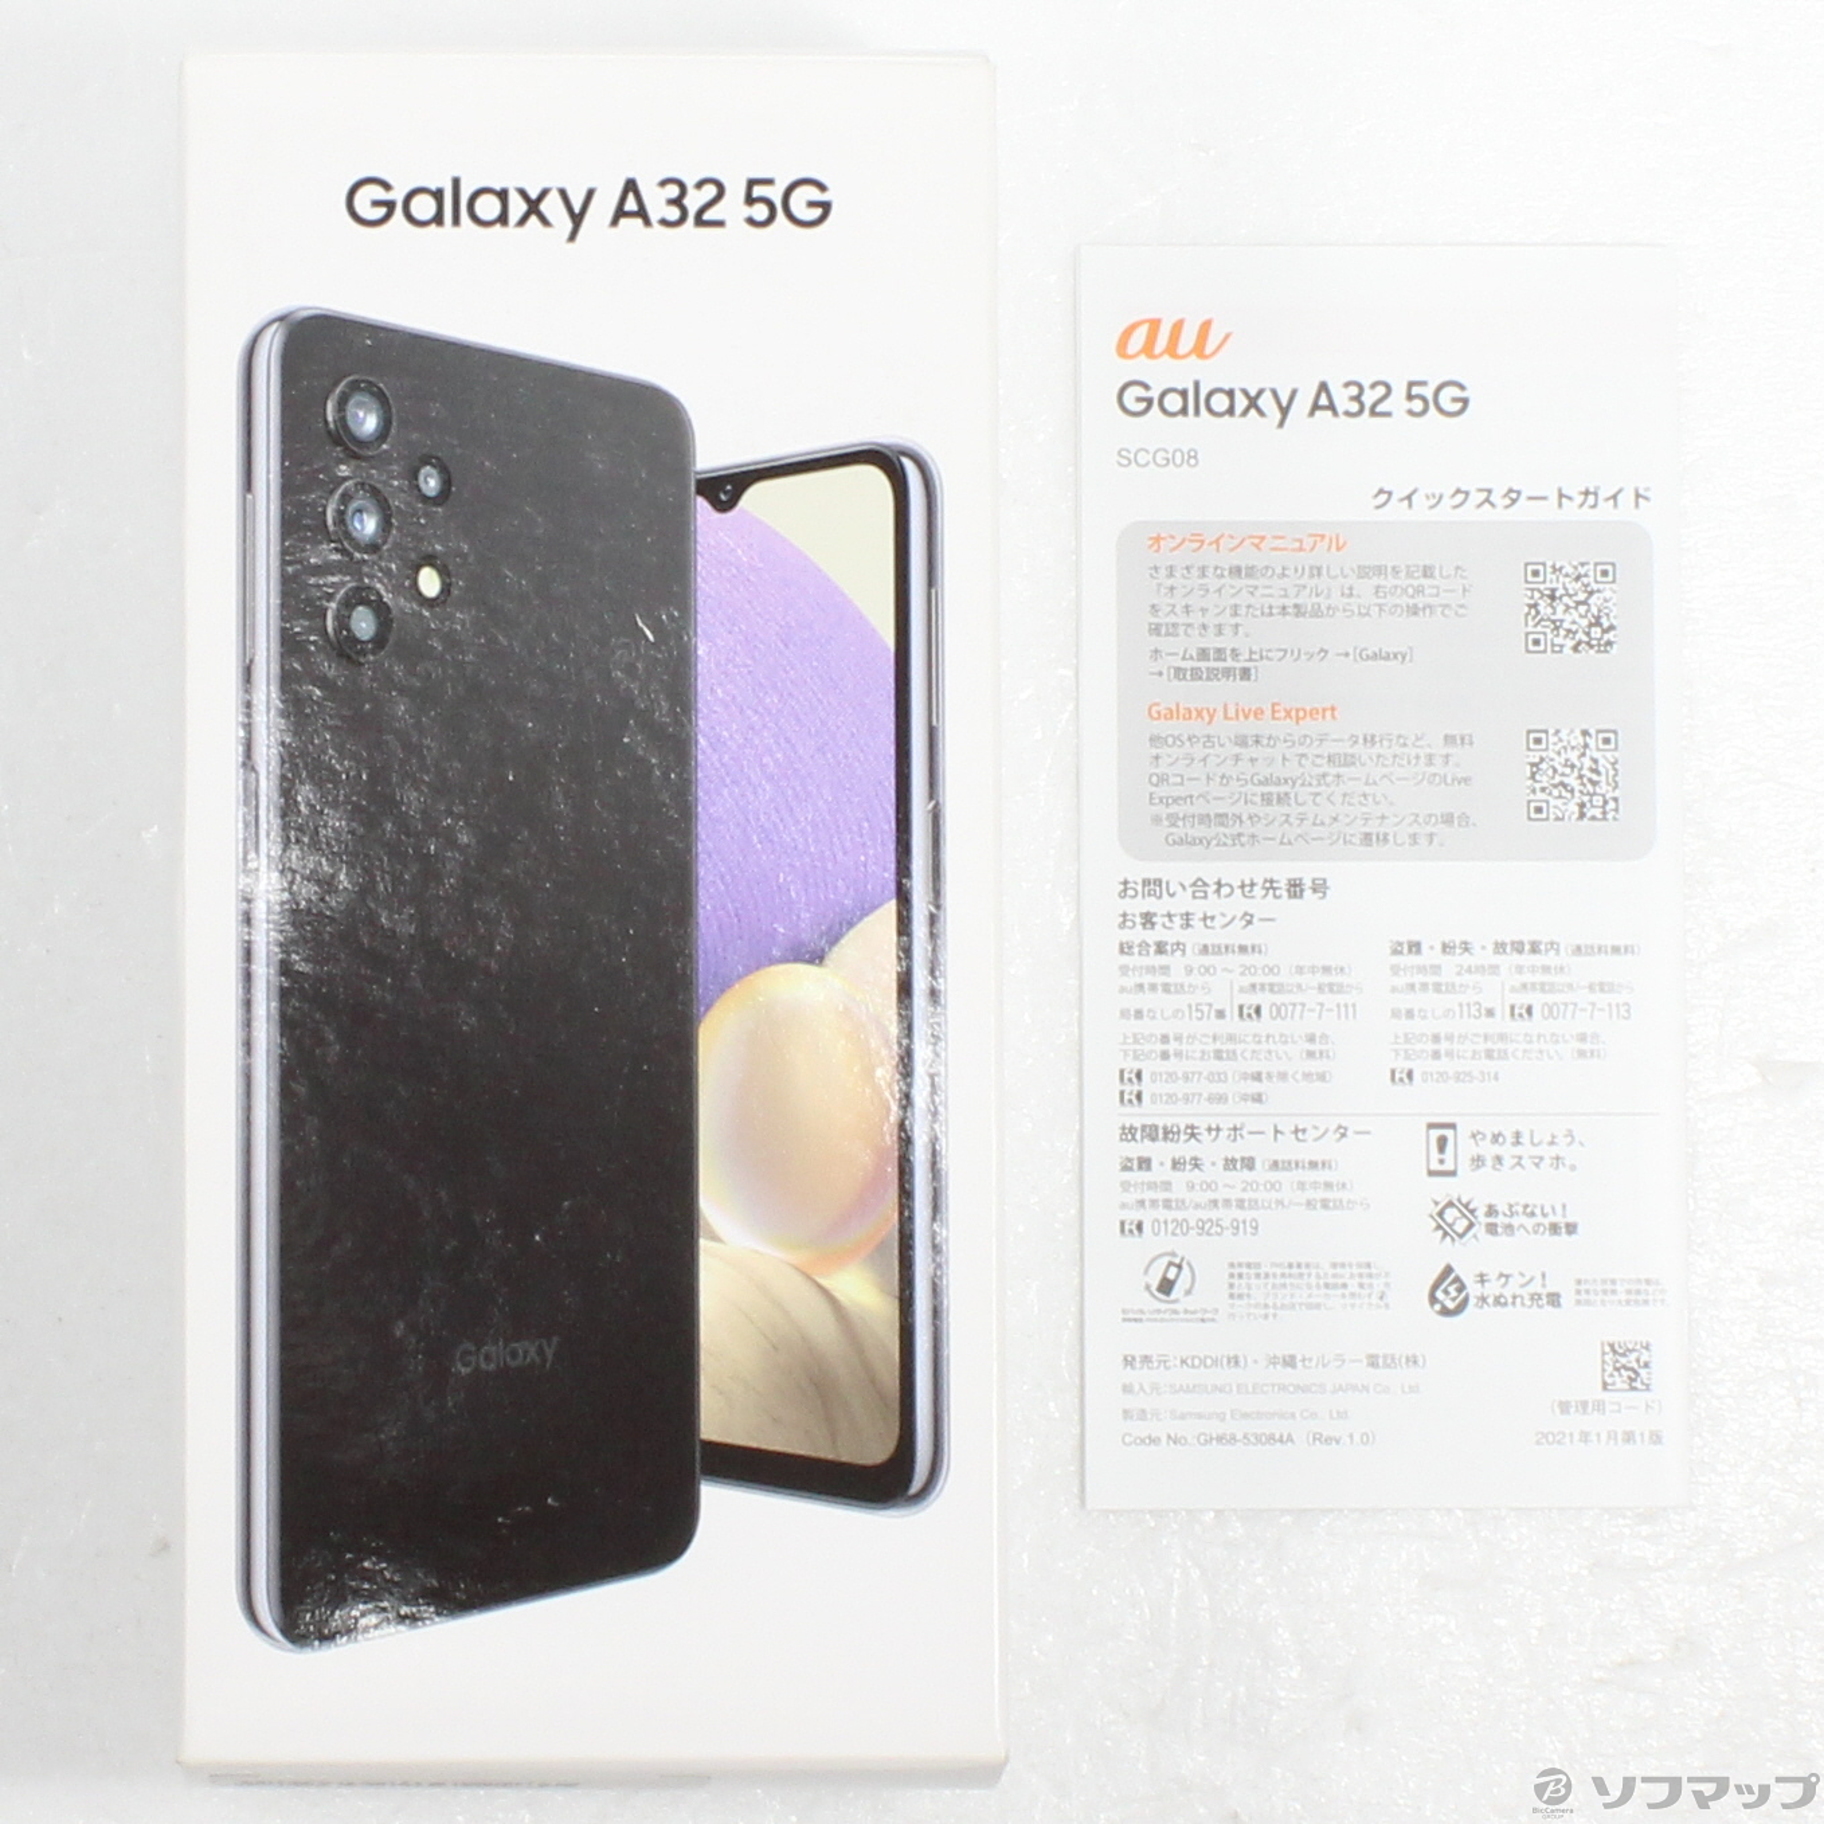 Galaxy A32 5G simフリースマートフォン/携帯電話